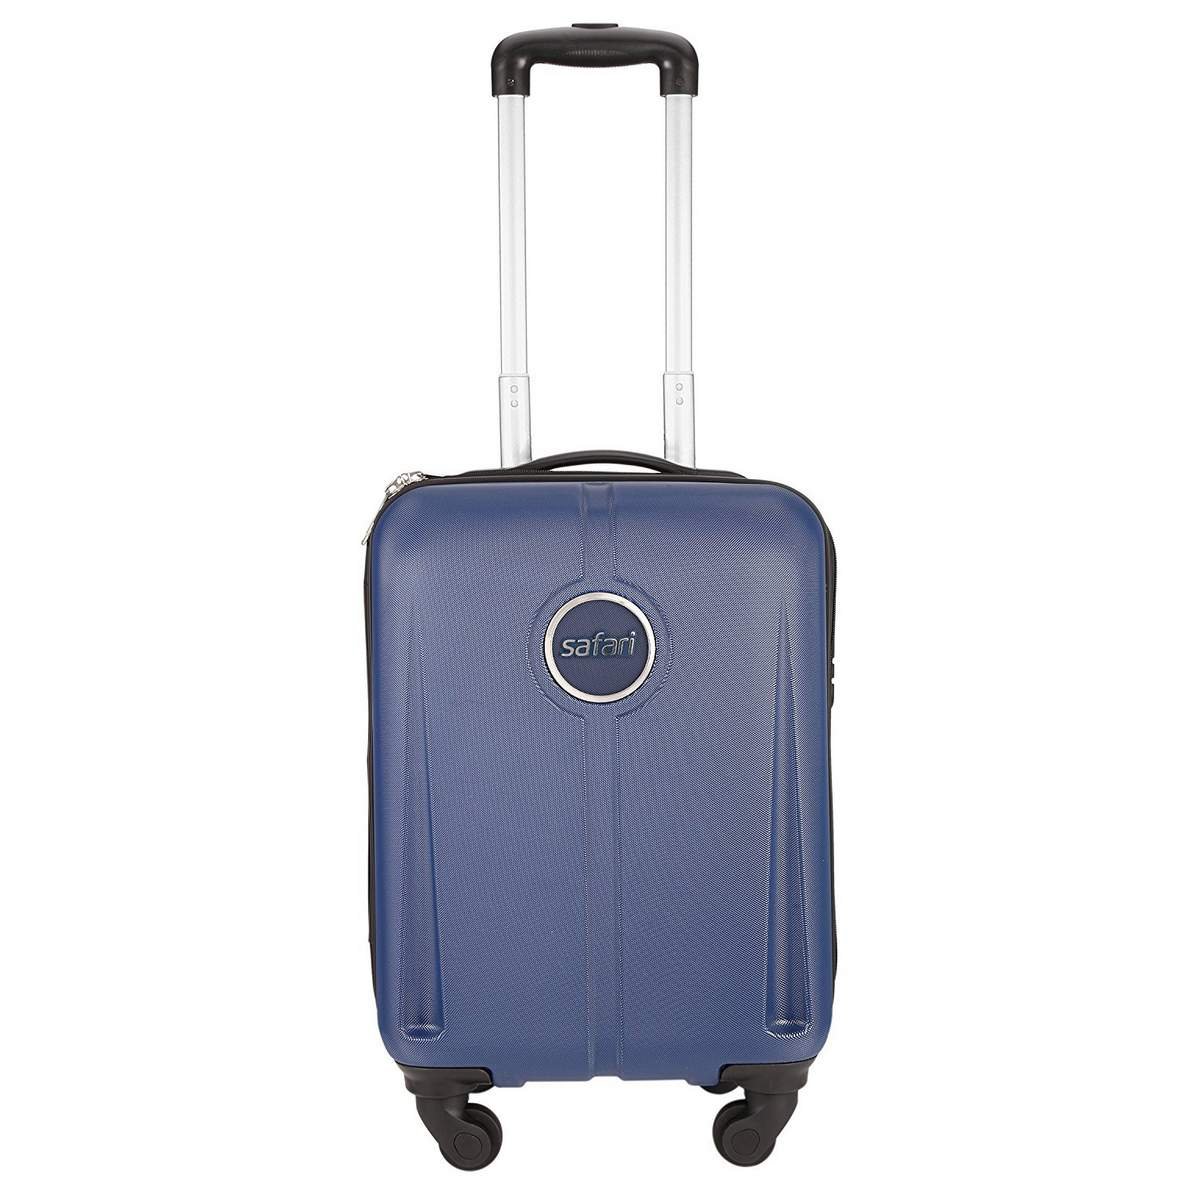 Safari Luggage Bags | Purple Cabin Luggage 22 Inch हिन्दी में REVIEW | F...  | Purple bags, Cabin luggage, Luggage bags